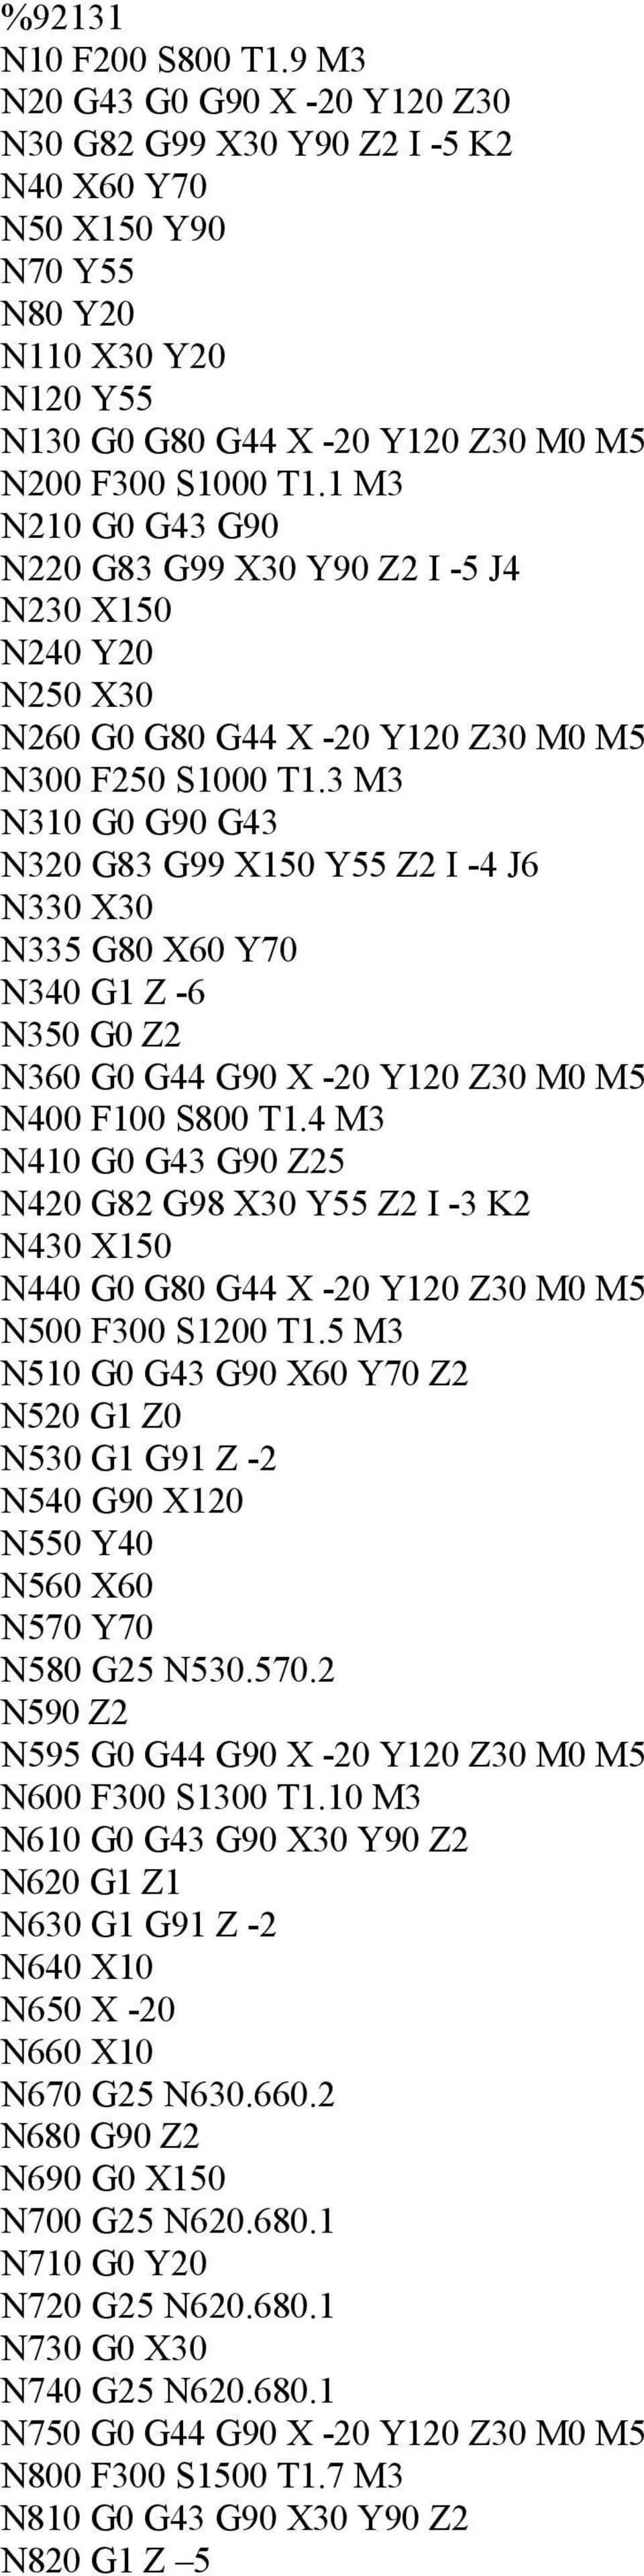 1 M3 N210 G0 G43 G90 N220 G83 G99 X30 Y90 Z2 I -5 J4 N230 X150 N240 Y20 N250 X30 N260 G0 G80 G44 X -20 Y120 Z30 M0 M5 N300 F250 S1000 T1.